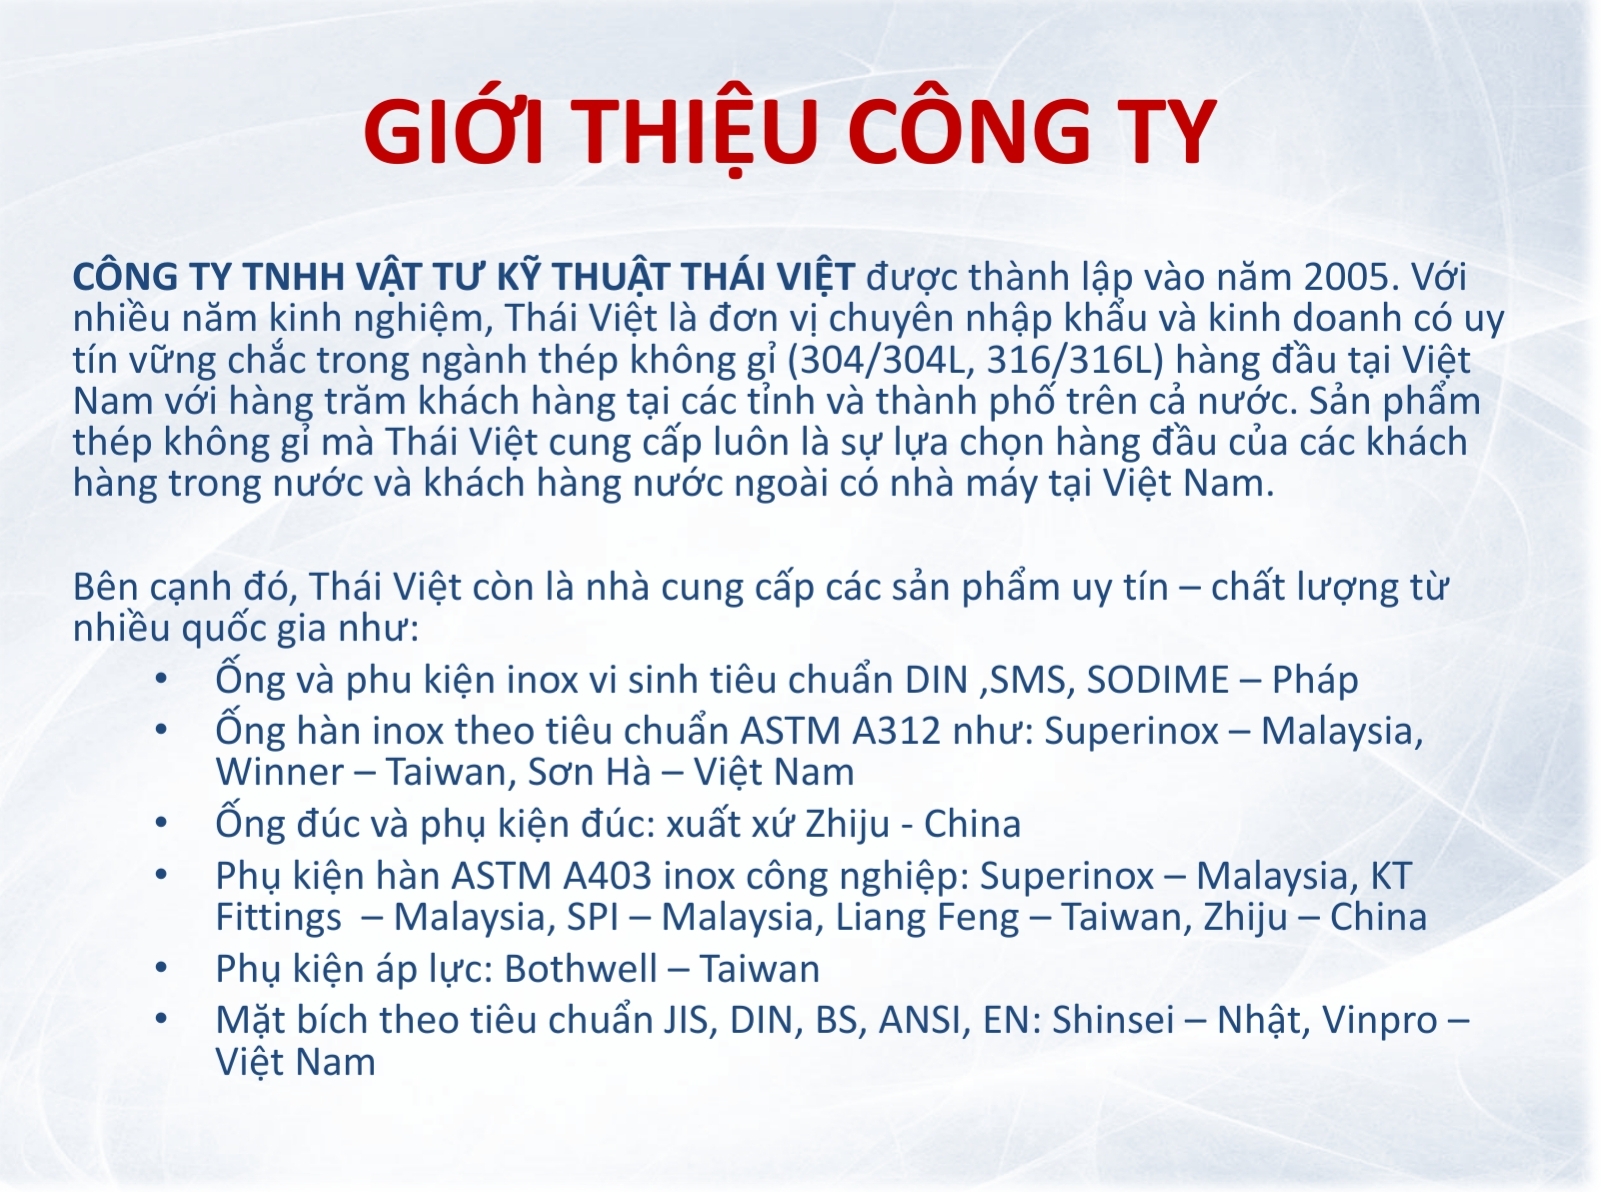 About us - Viet Thai